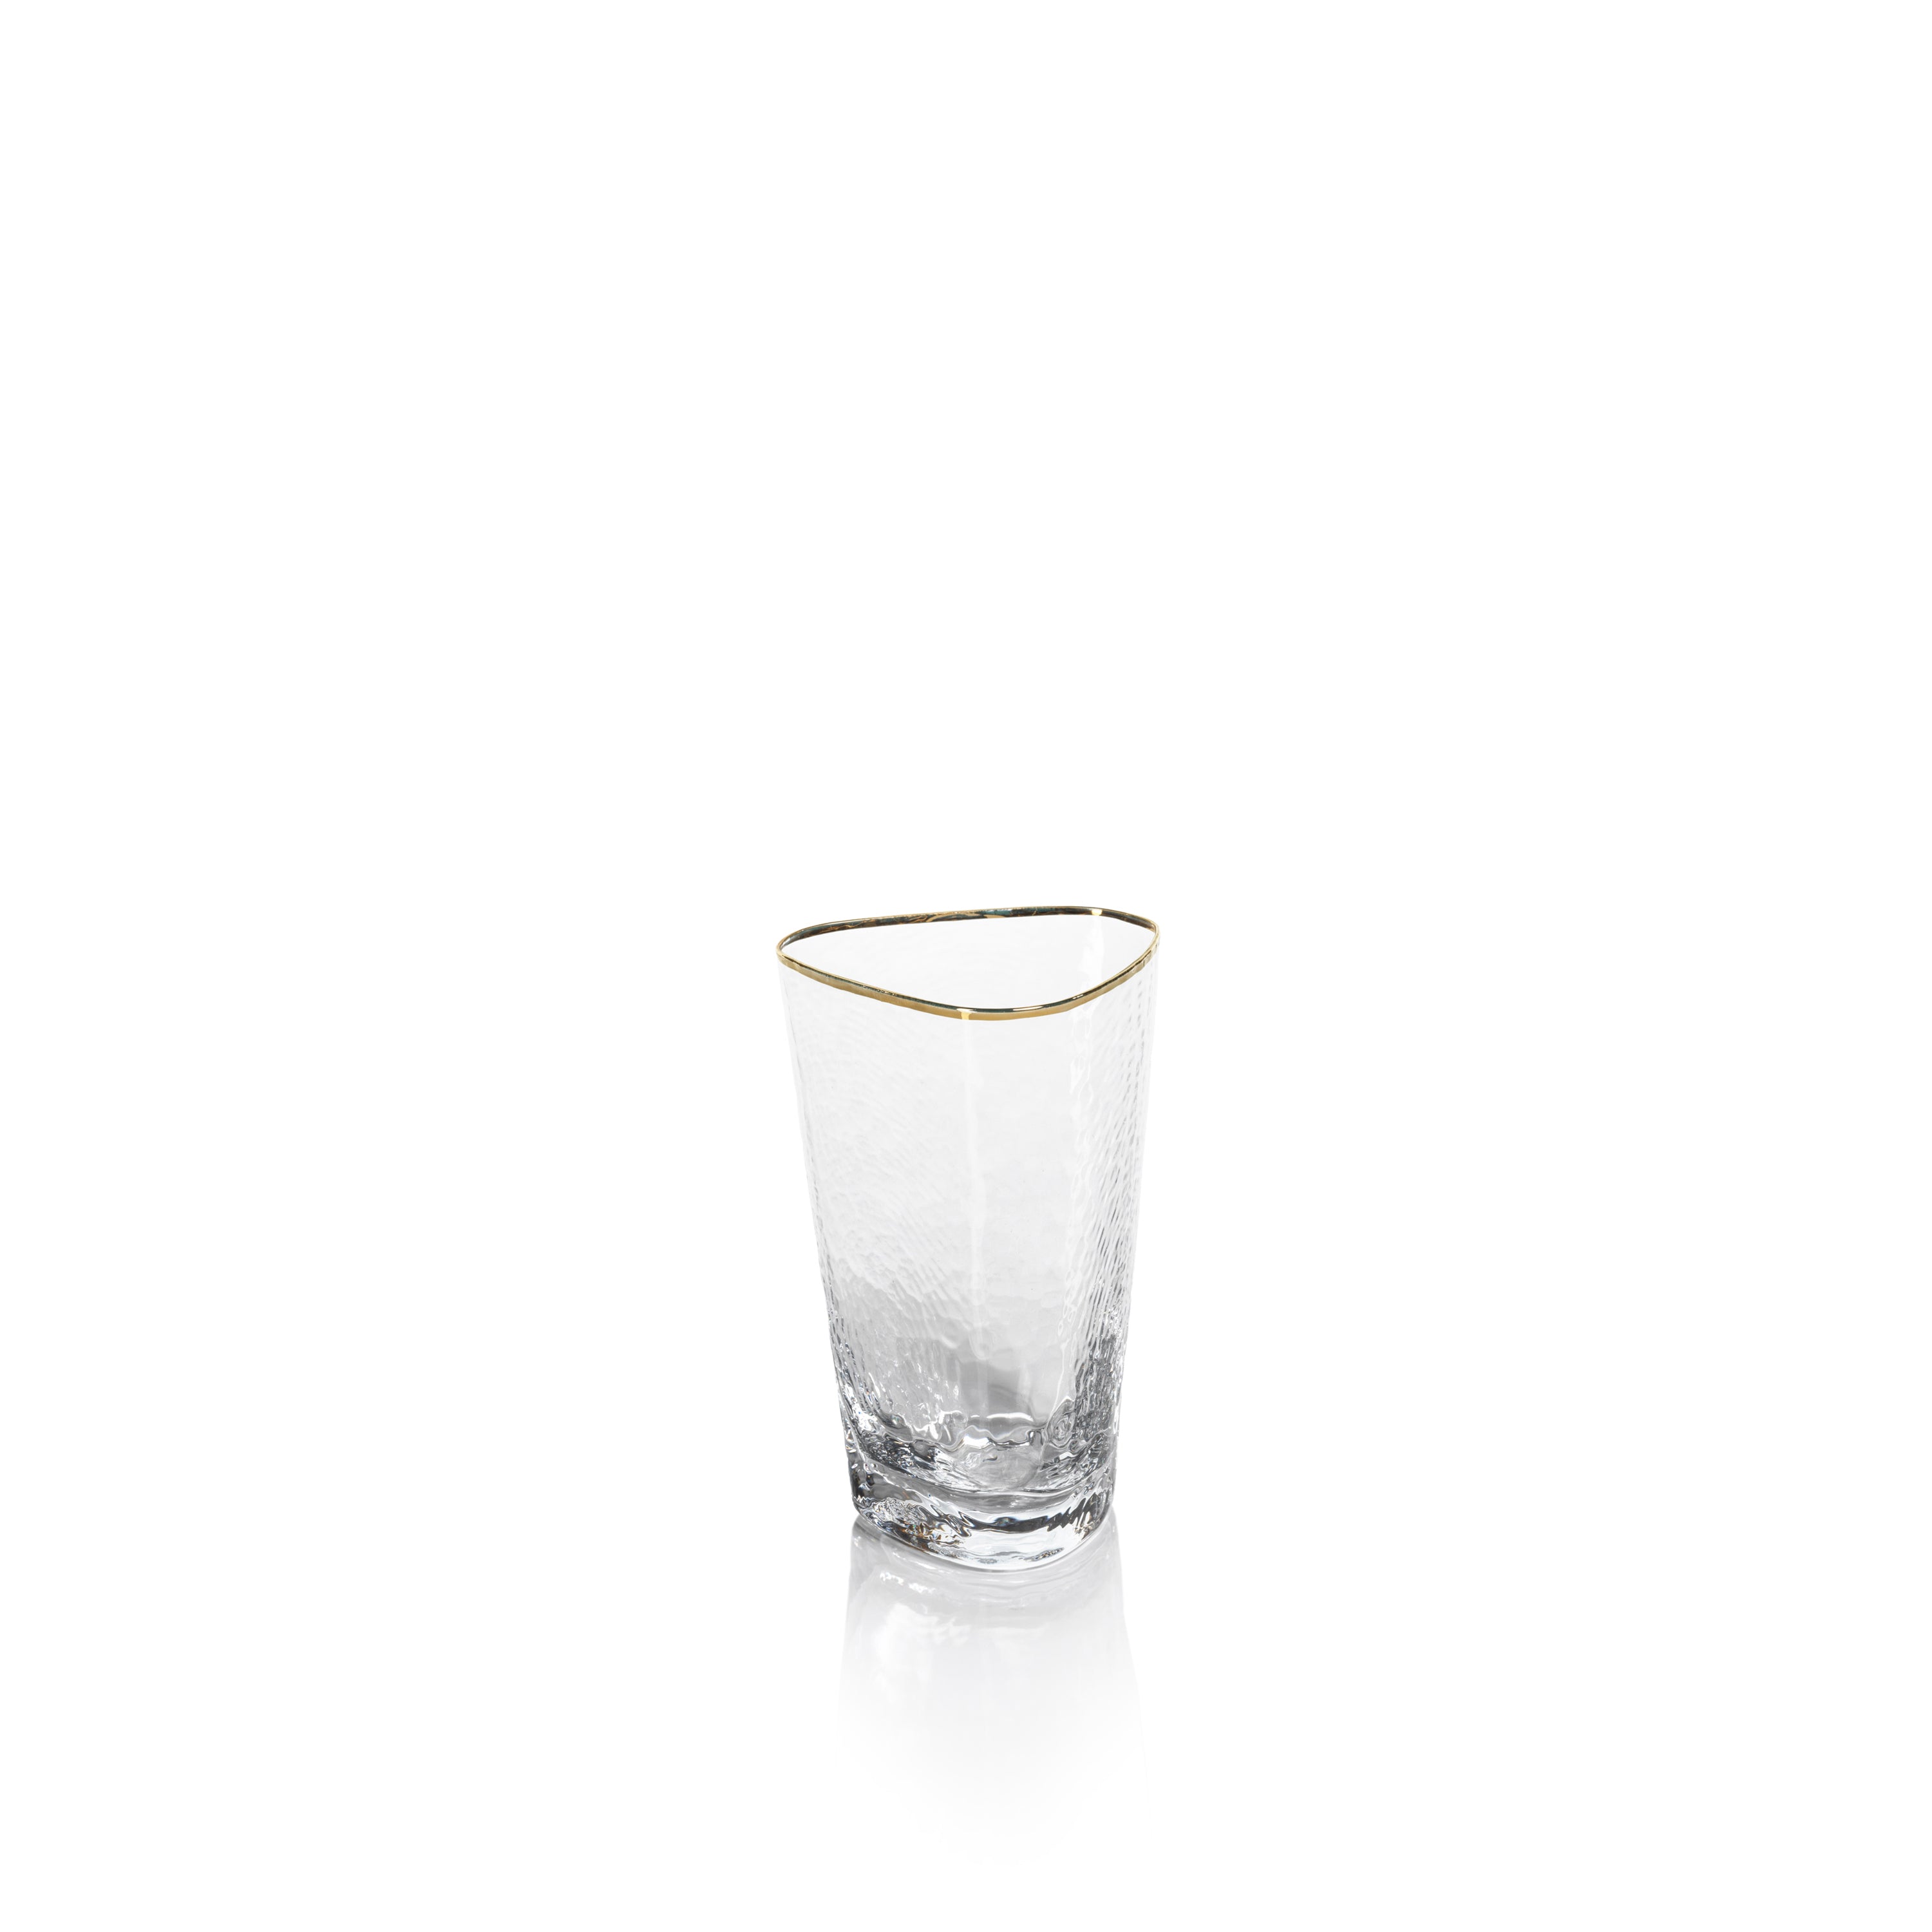 Aperitivo Triangular HB Glass, Clear w/ Gold Rim